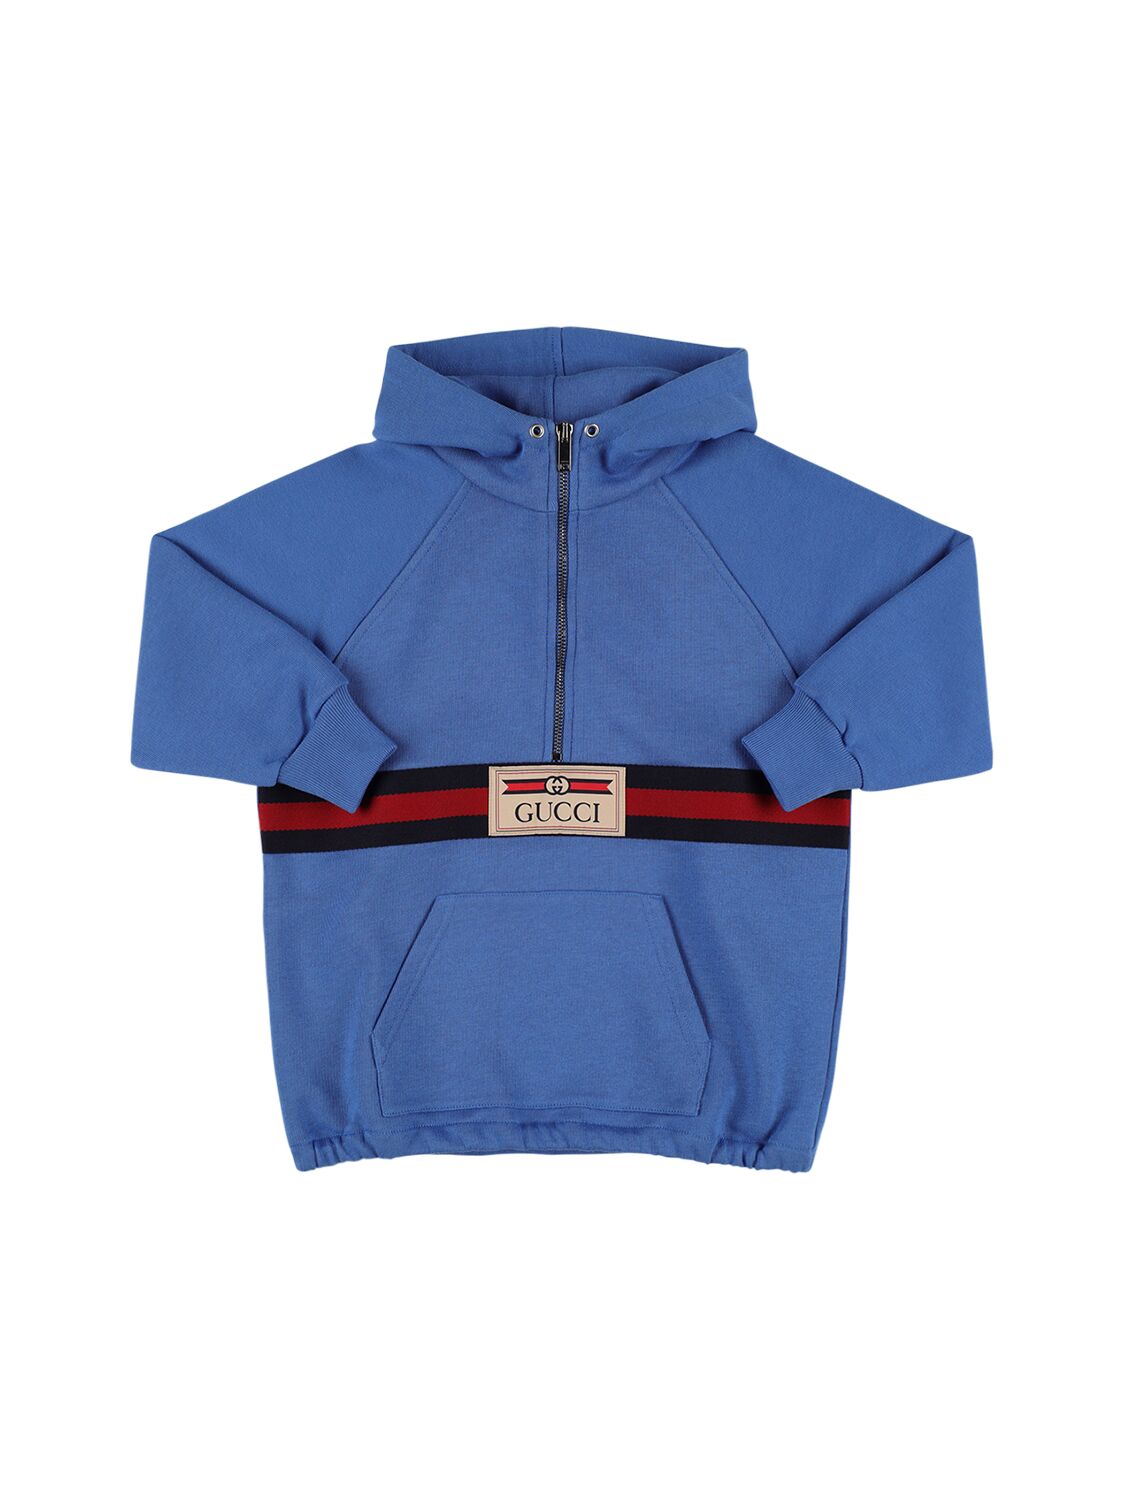 Gucci Kids' Cotton Sweatshirt Hoodie W/ Web In Blue,multi